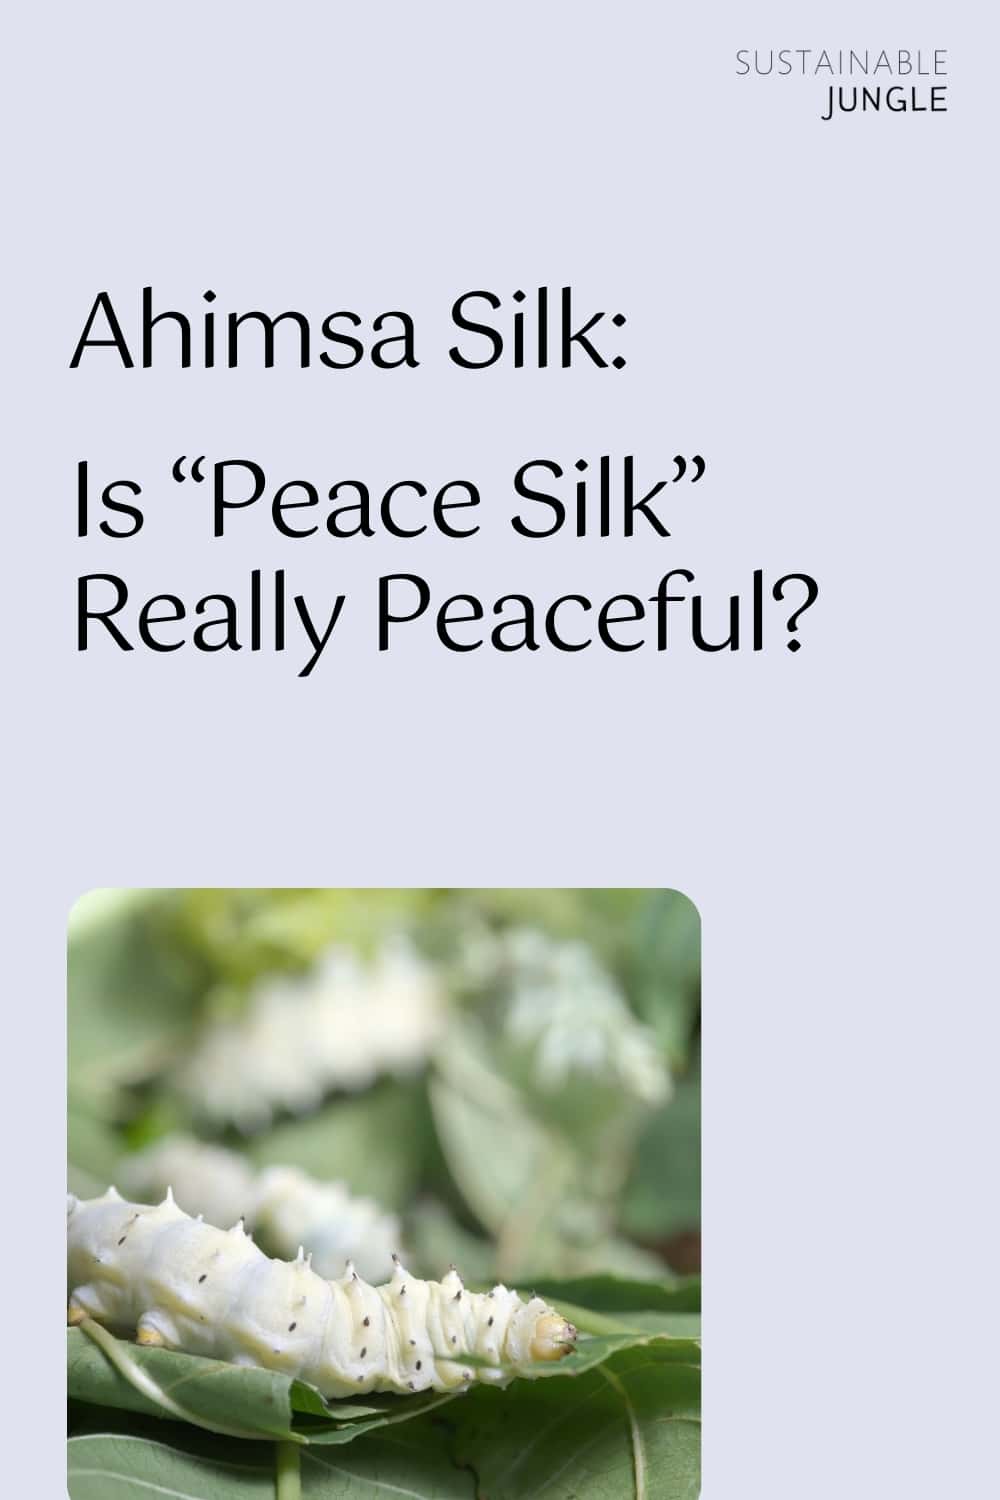 Ahimsa Silk: Is “Peace Silk” Really Peaceful? Image by nattul #ahimsasilk #peacesilk #ahimsapeacesilk #ethicalsilk #ahimsasilkfabric #crueltyfreesilk #sustainablejungle